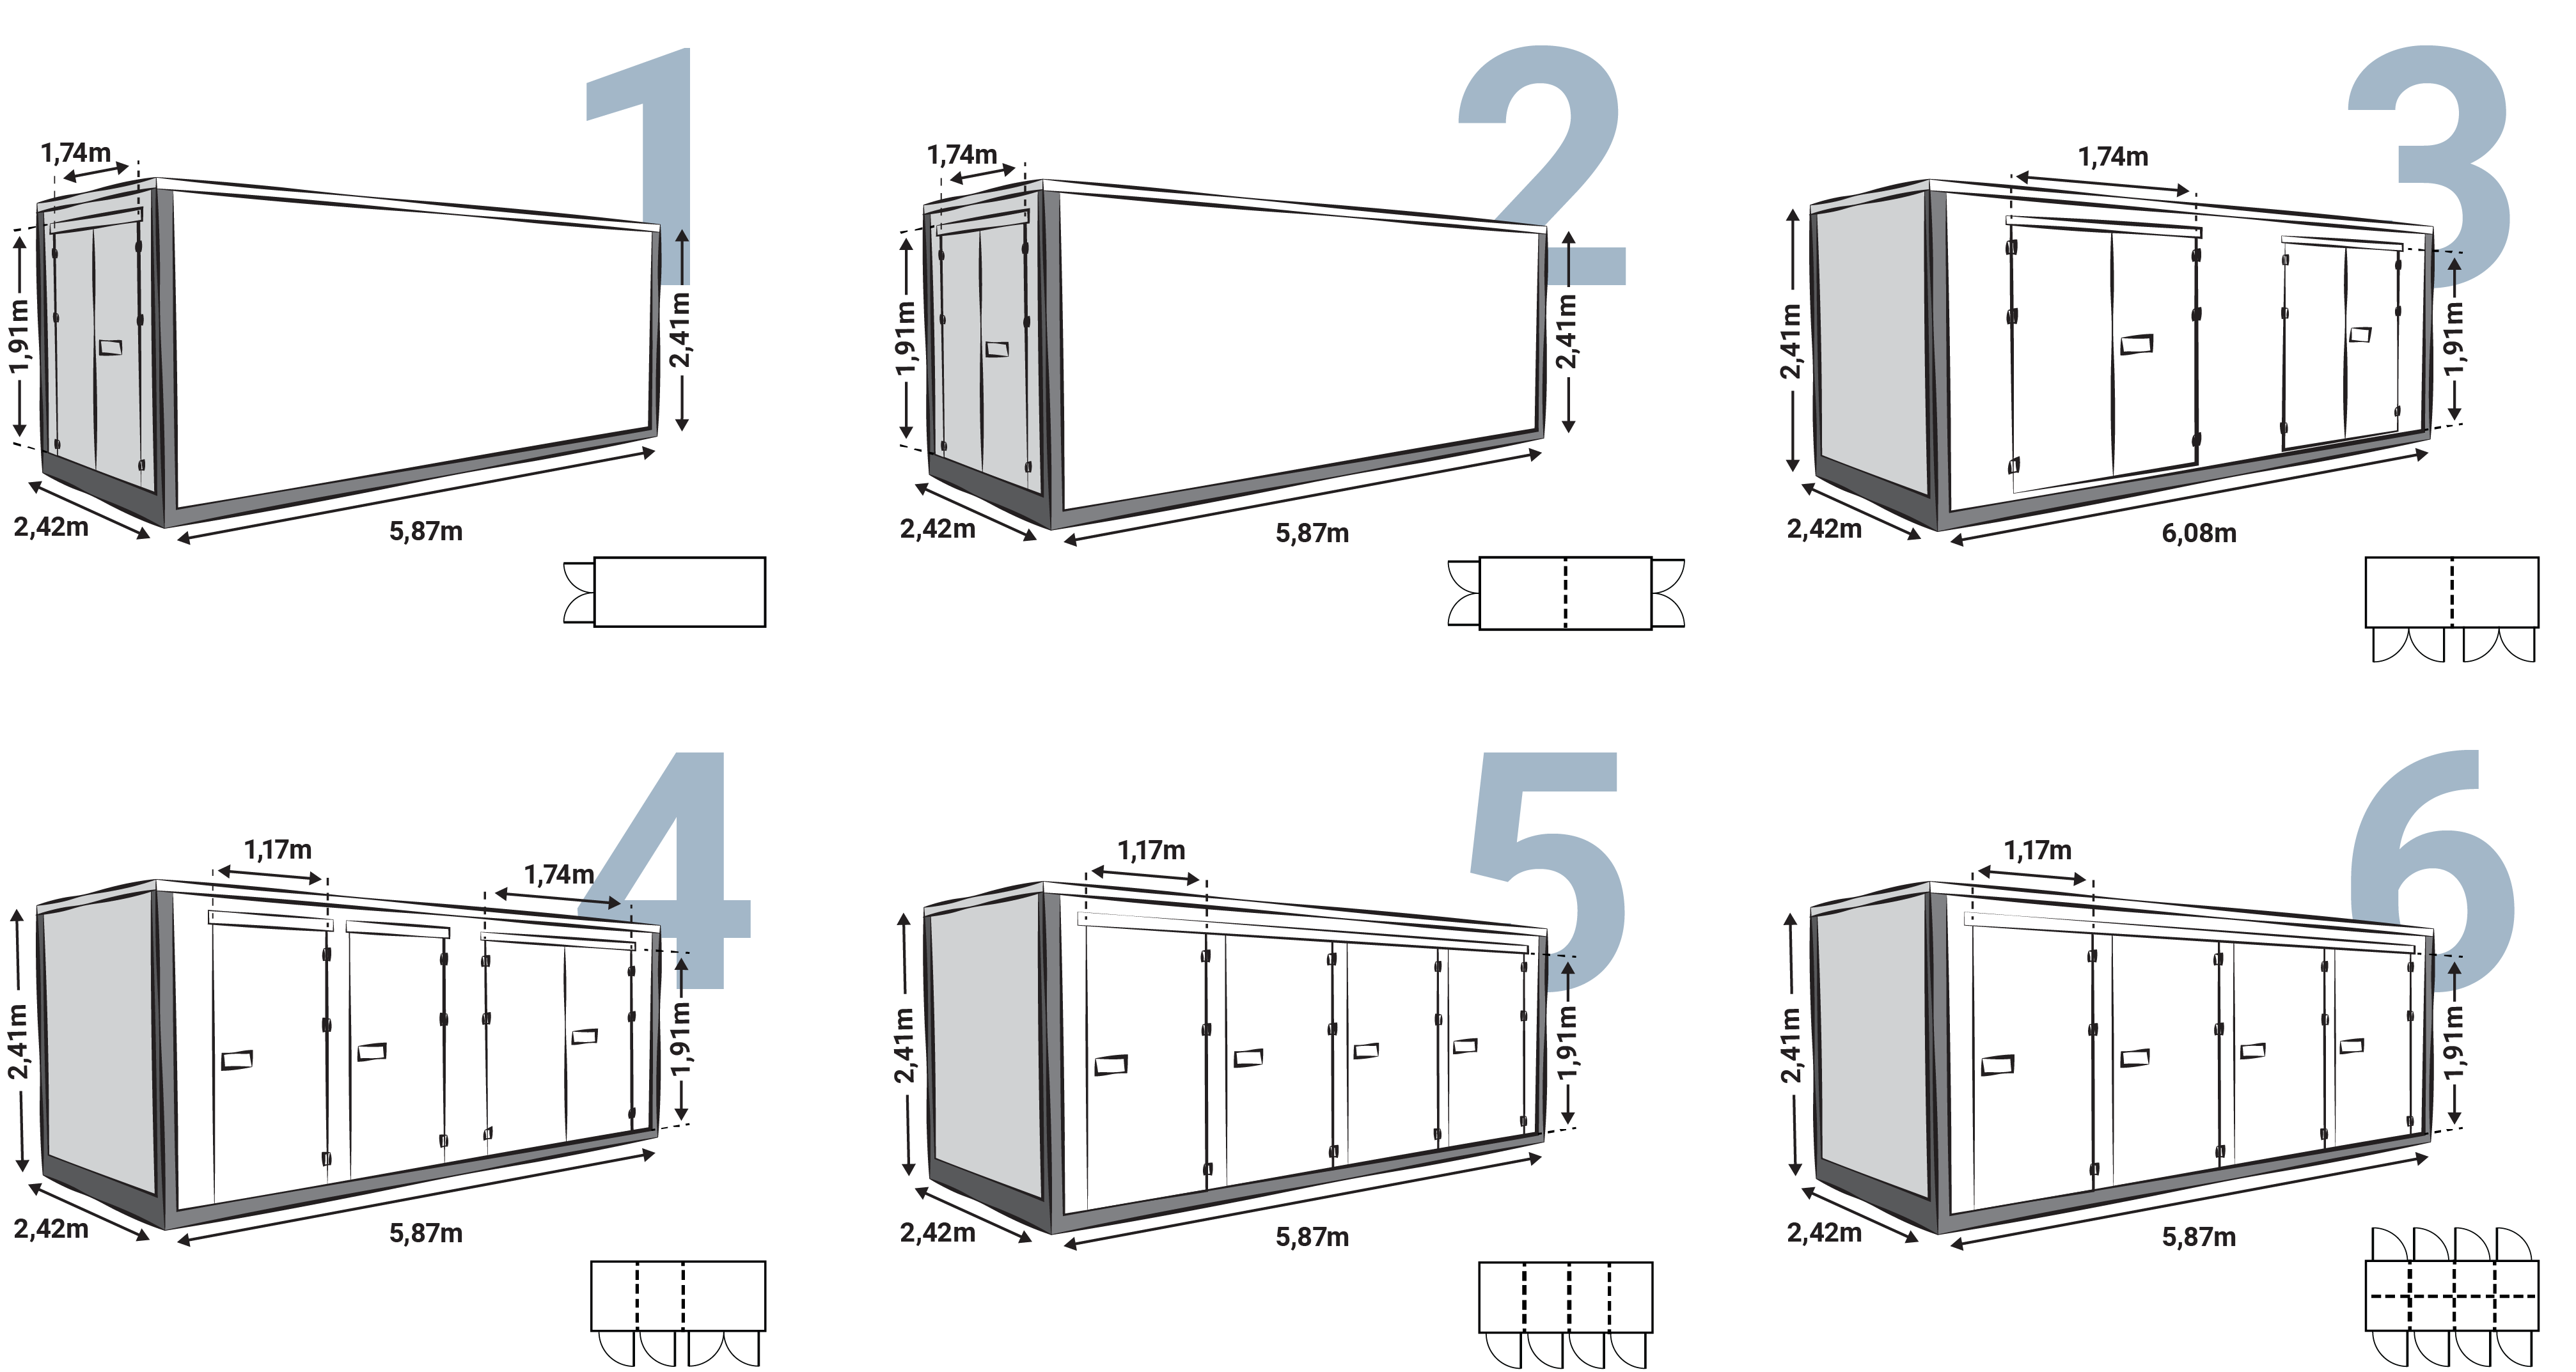 Genummerd overzicht van de verschillende Z Box modellen die worden aangeboden door Universal Storage Containers